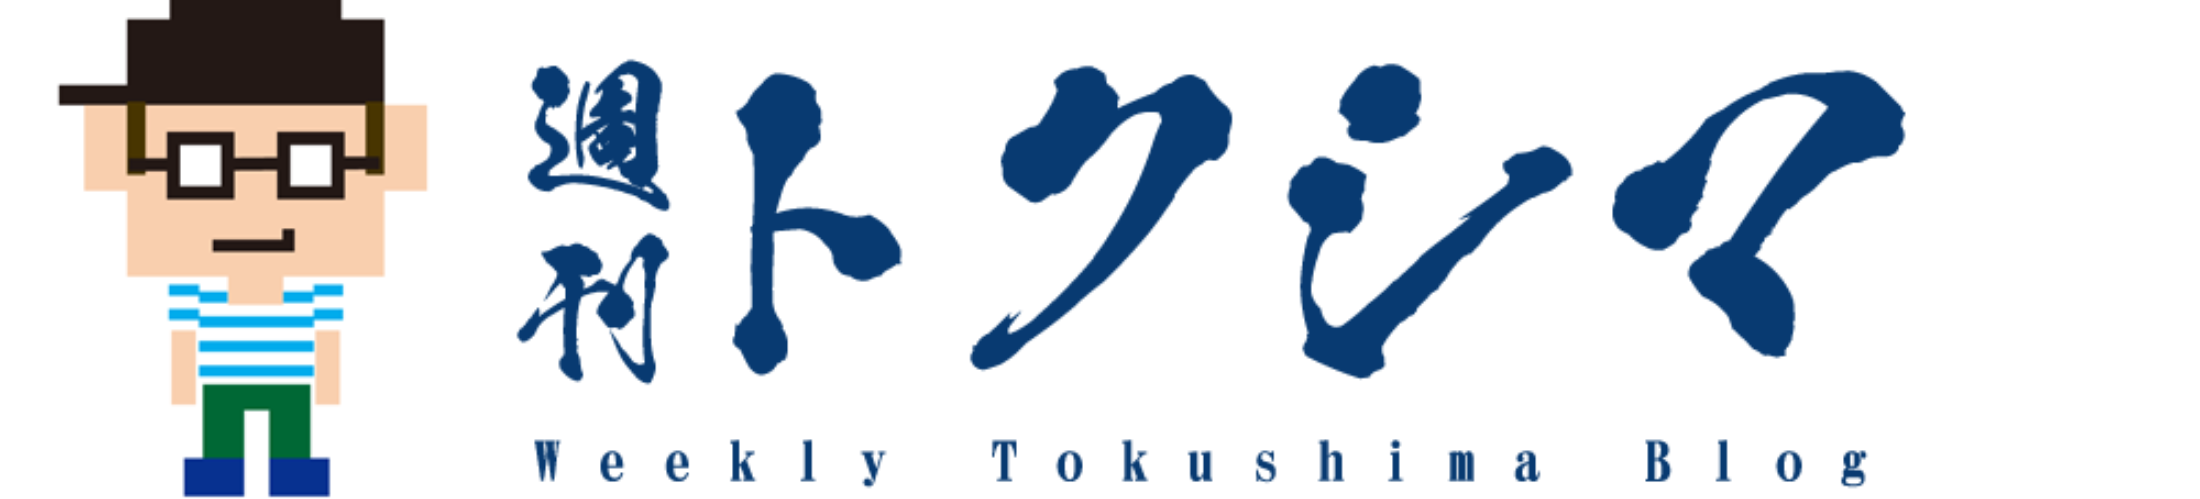 WEEKLY TOKUSHIMA Shu TOKU